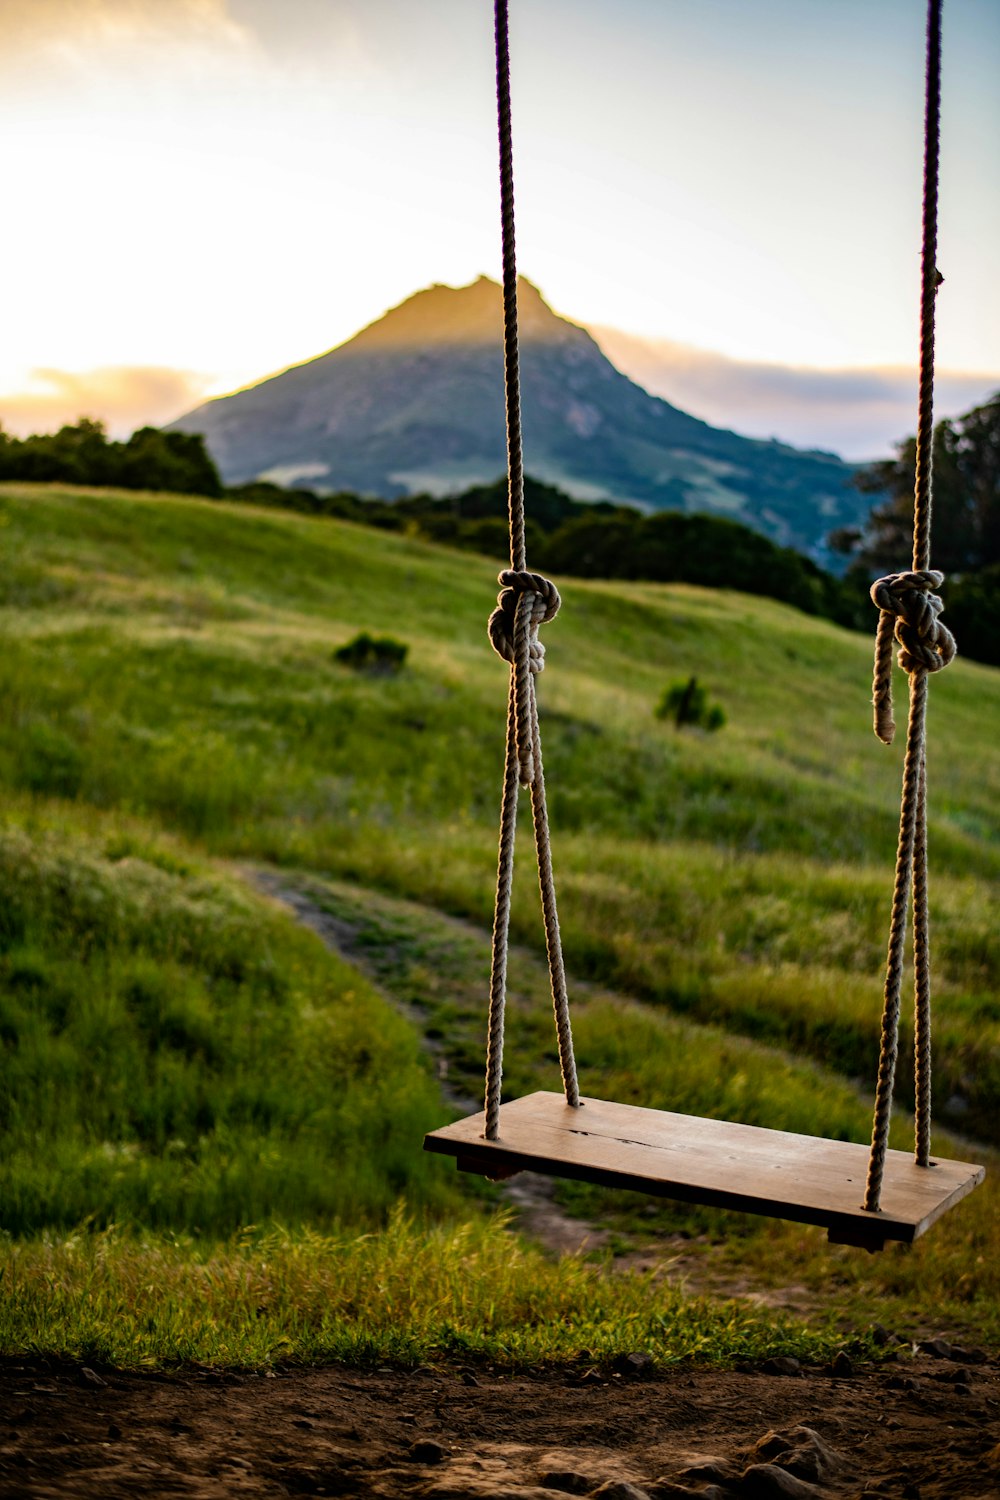 a swing set in a field